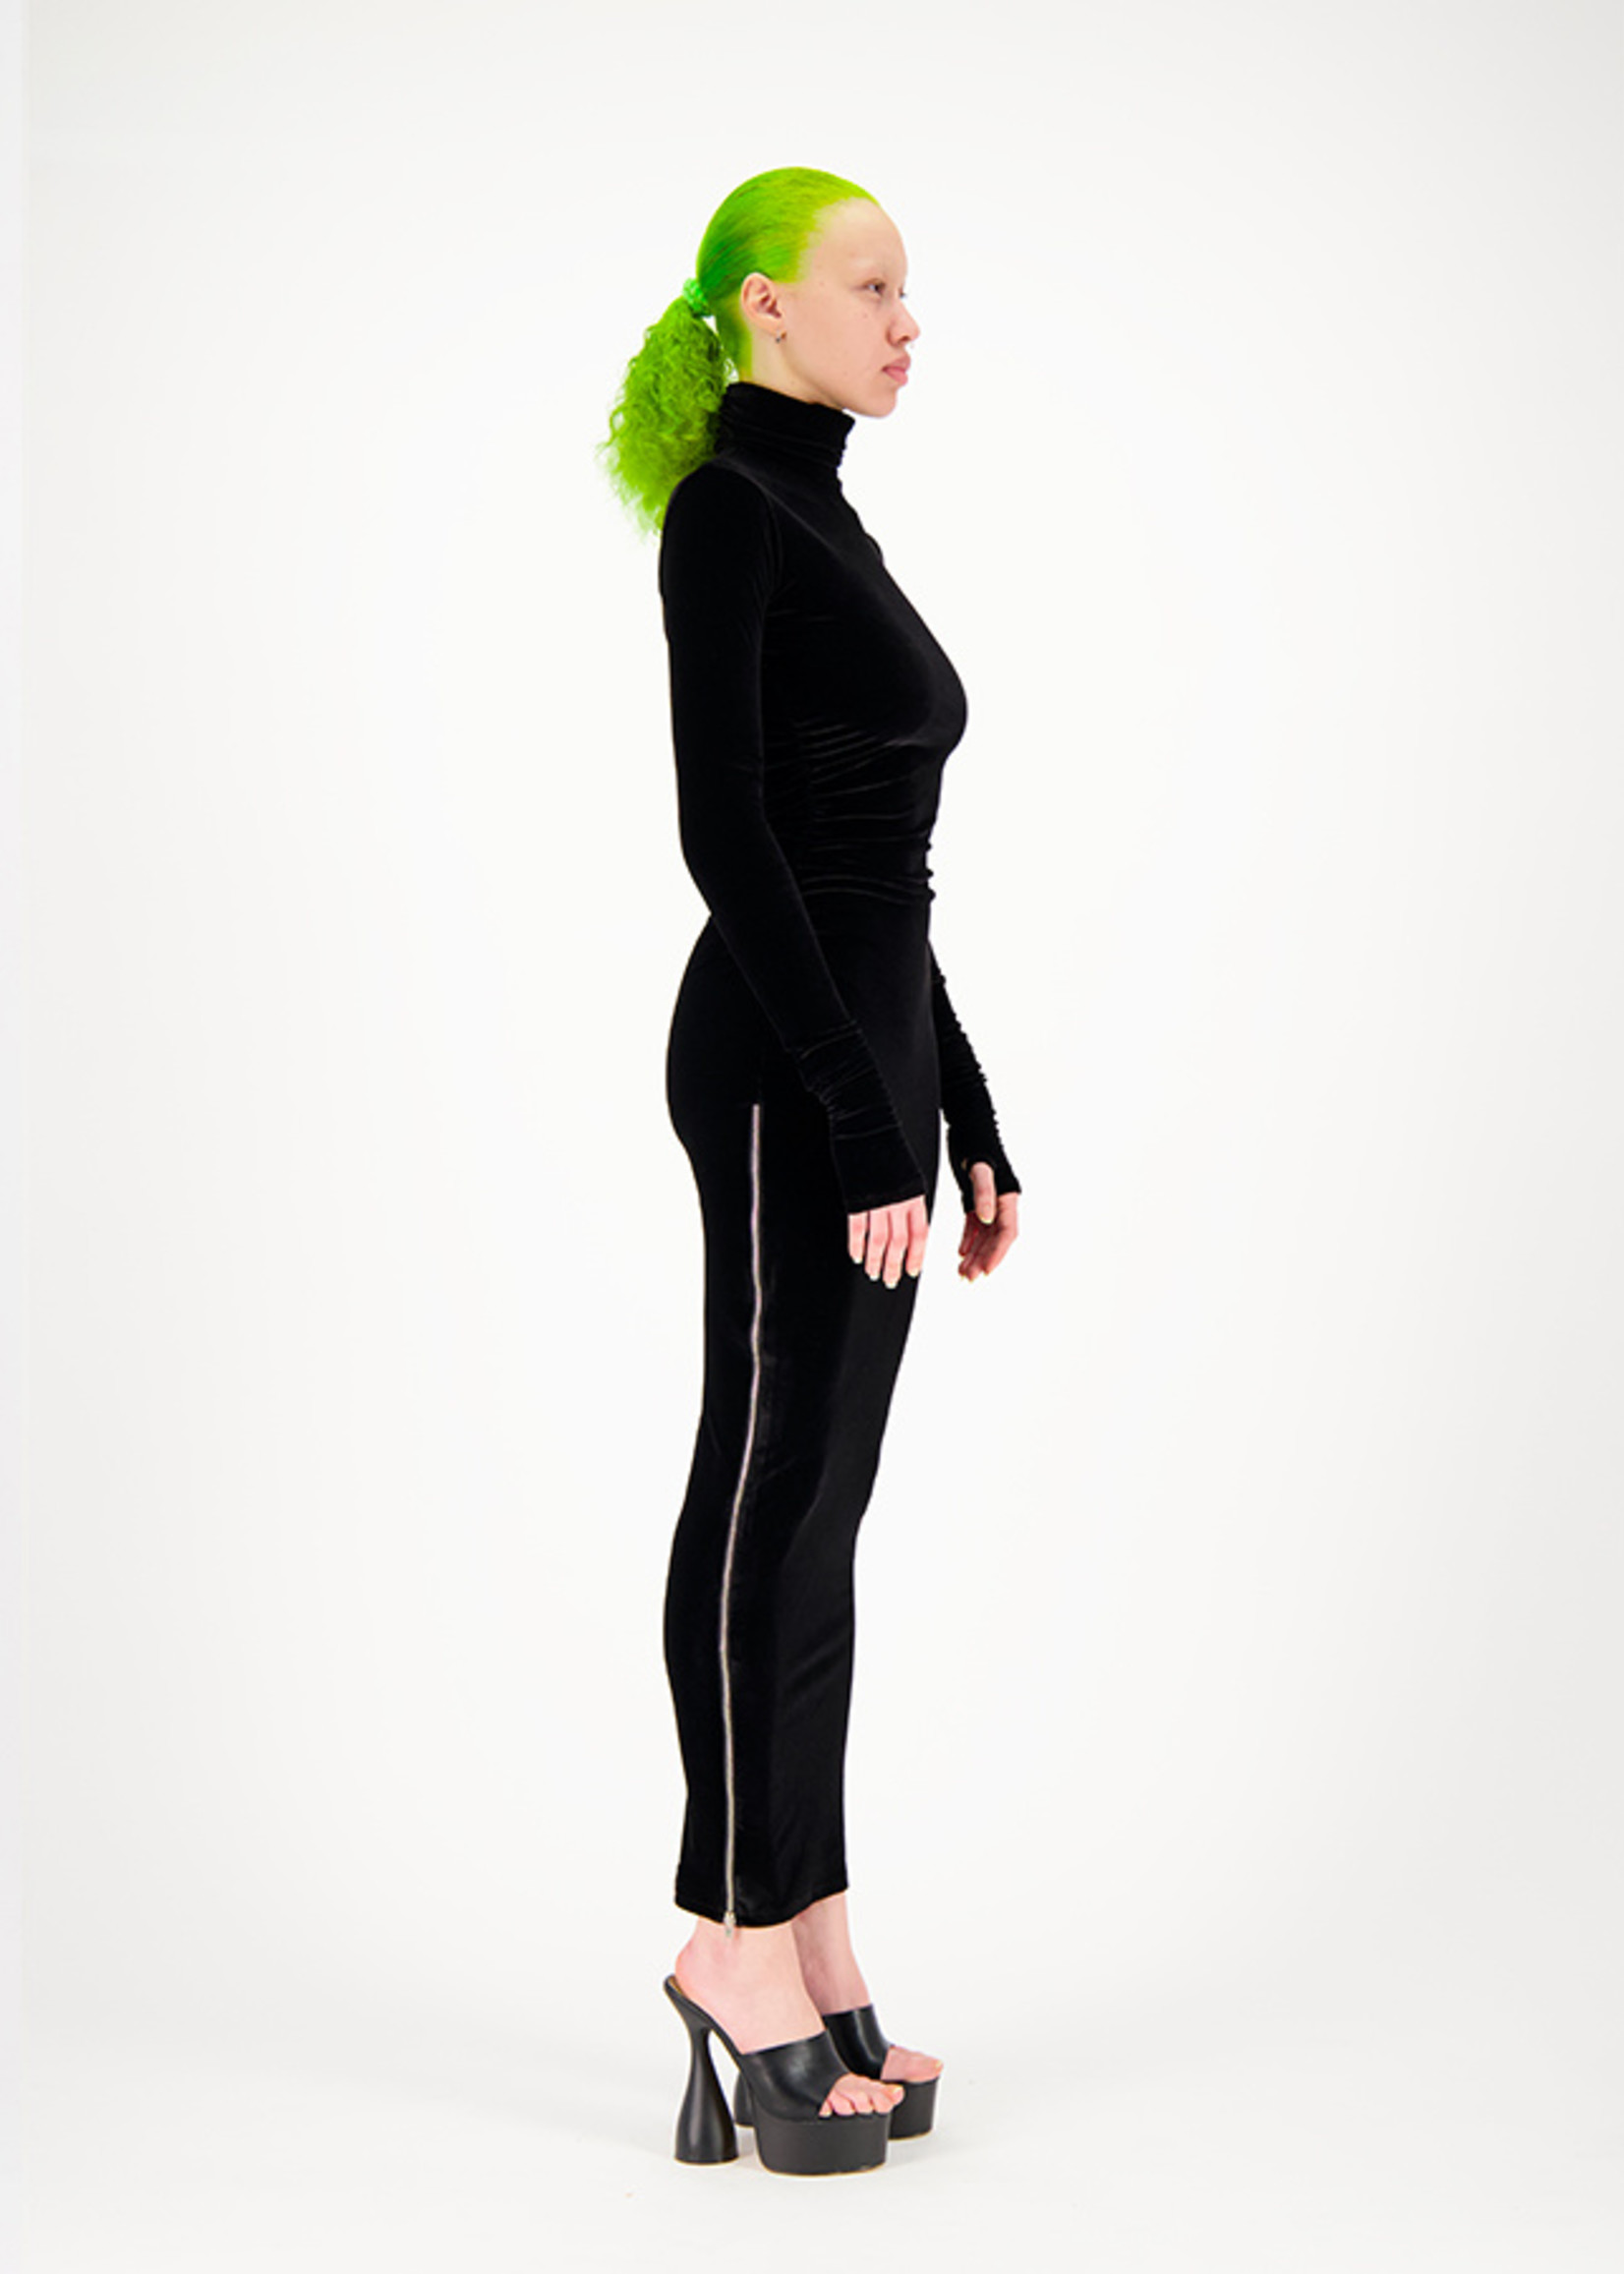 WEINSANTO Velvet Fitted Turtleneck Dress in Black